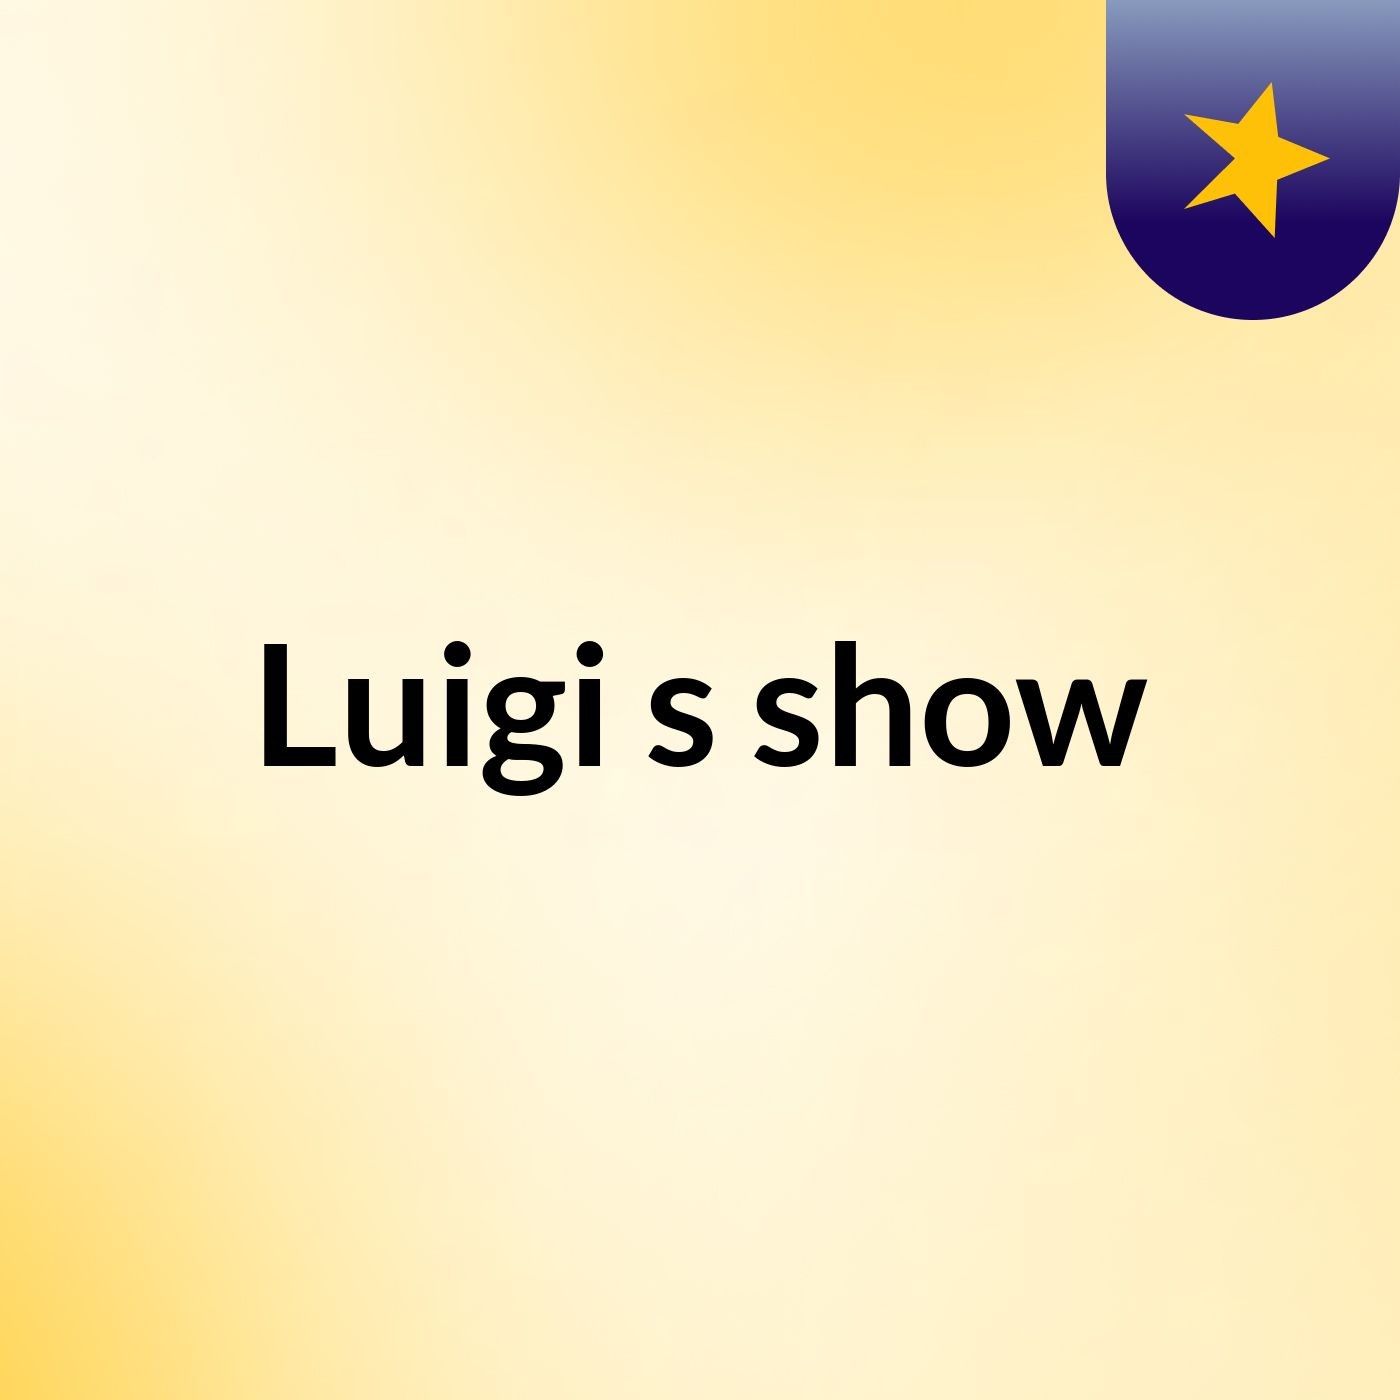 Luigi's show